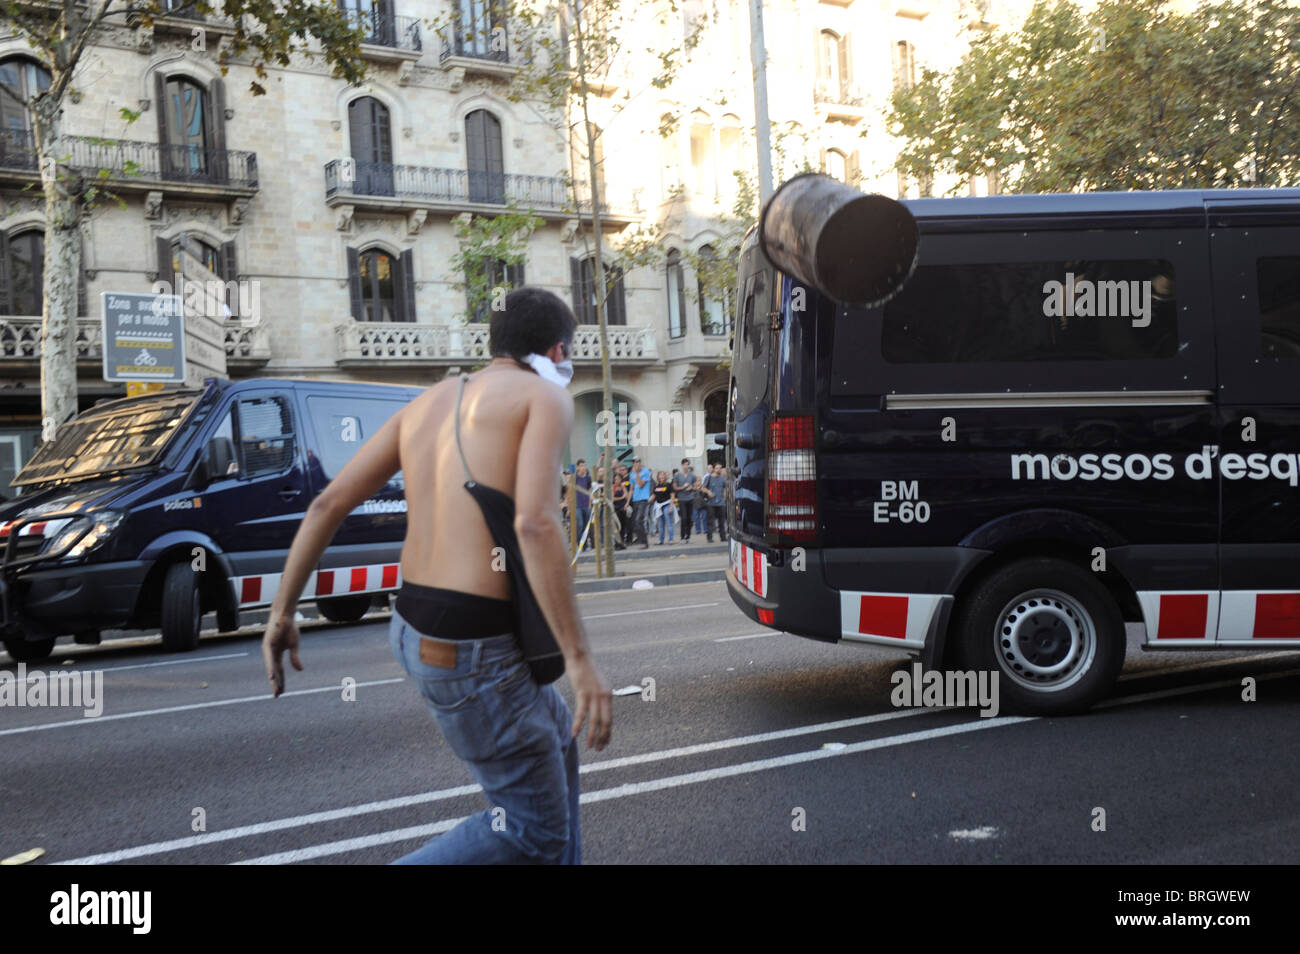 Un attivista anti sistema genera un cestino della spazzatura contro un furgone della polizia durante scontri al centro della città di Barcellona durante lo sciopero. Foto Stock